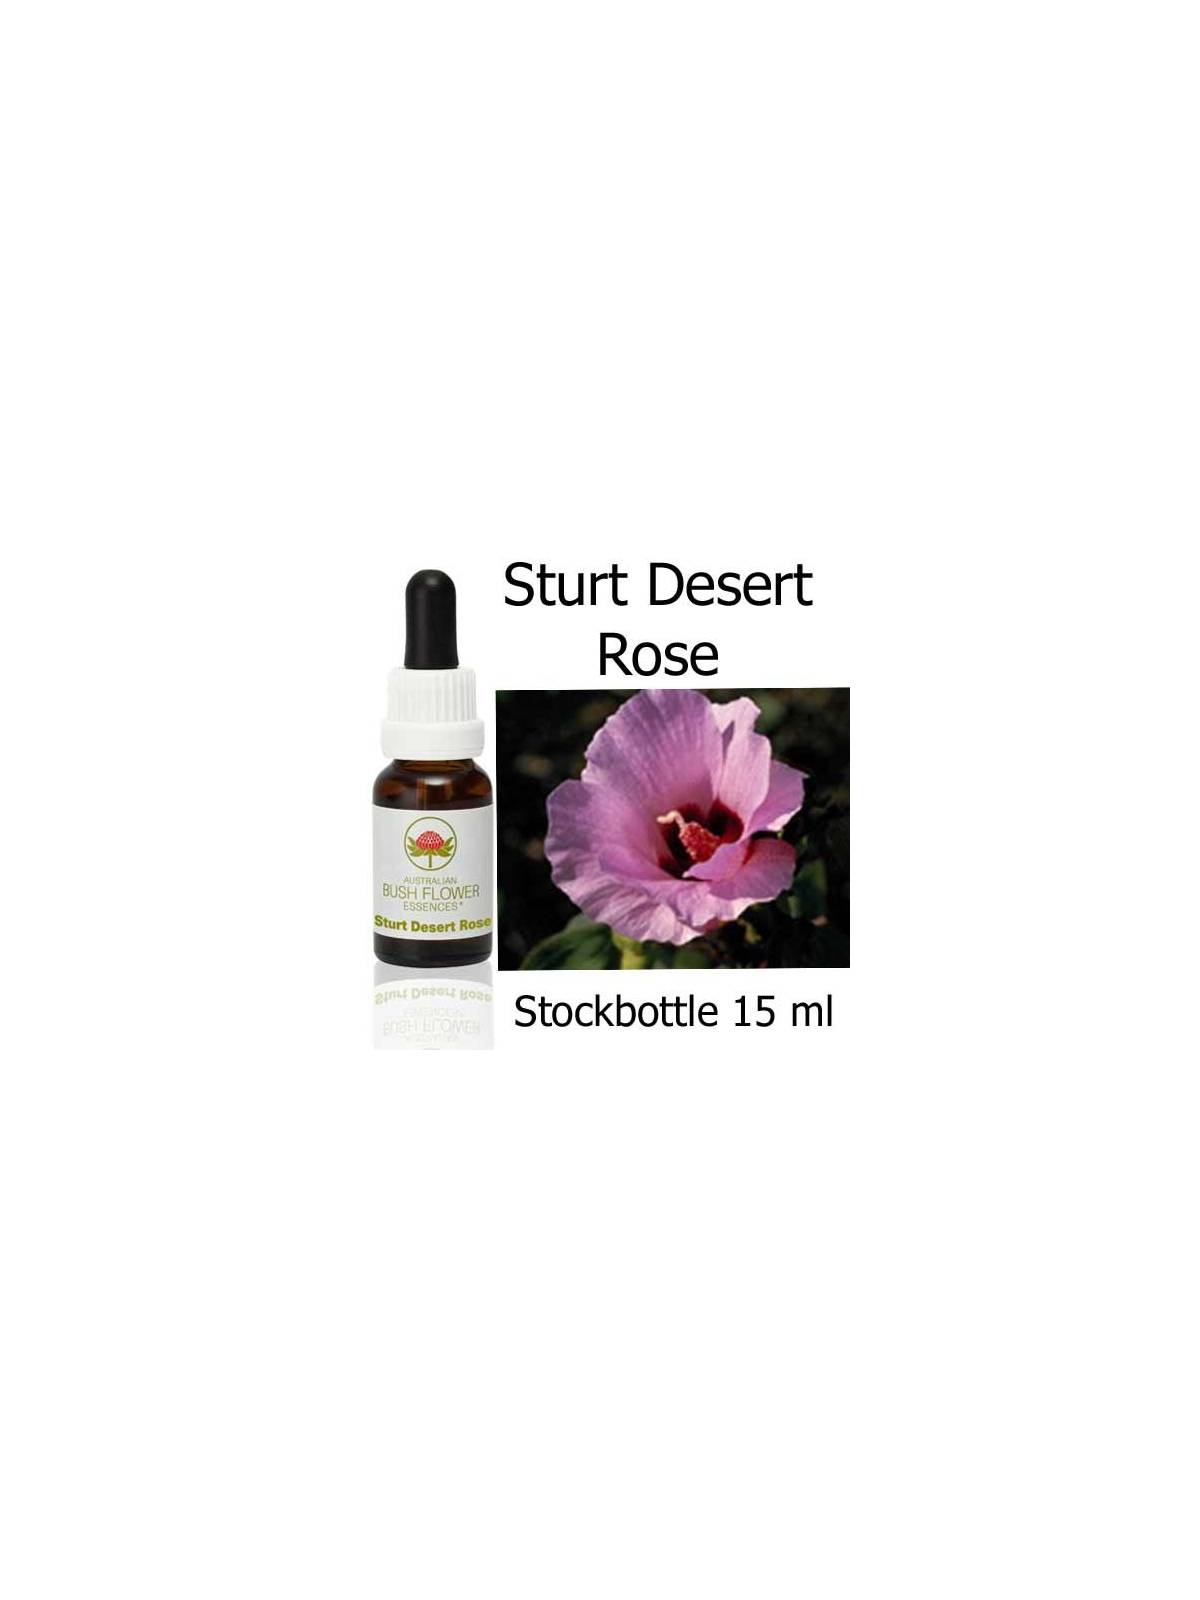 Sturt Desert Rose Australian Bush Flower Essences stockbottles